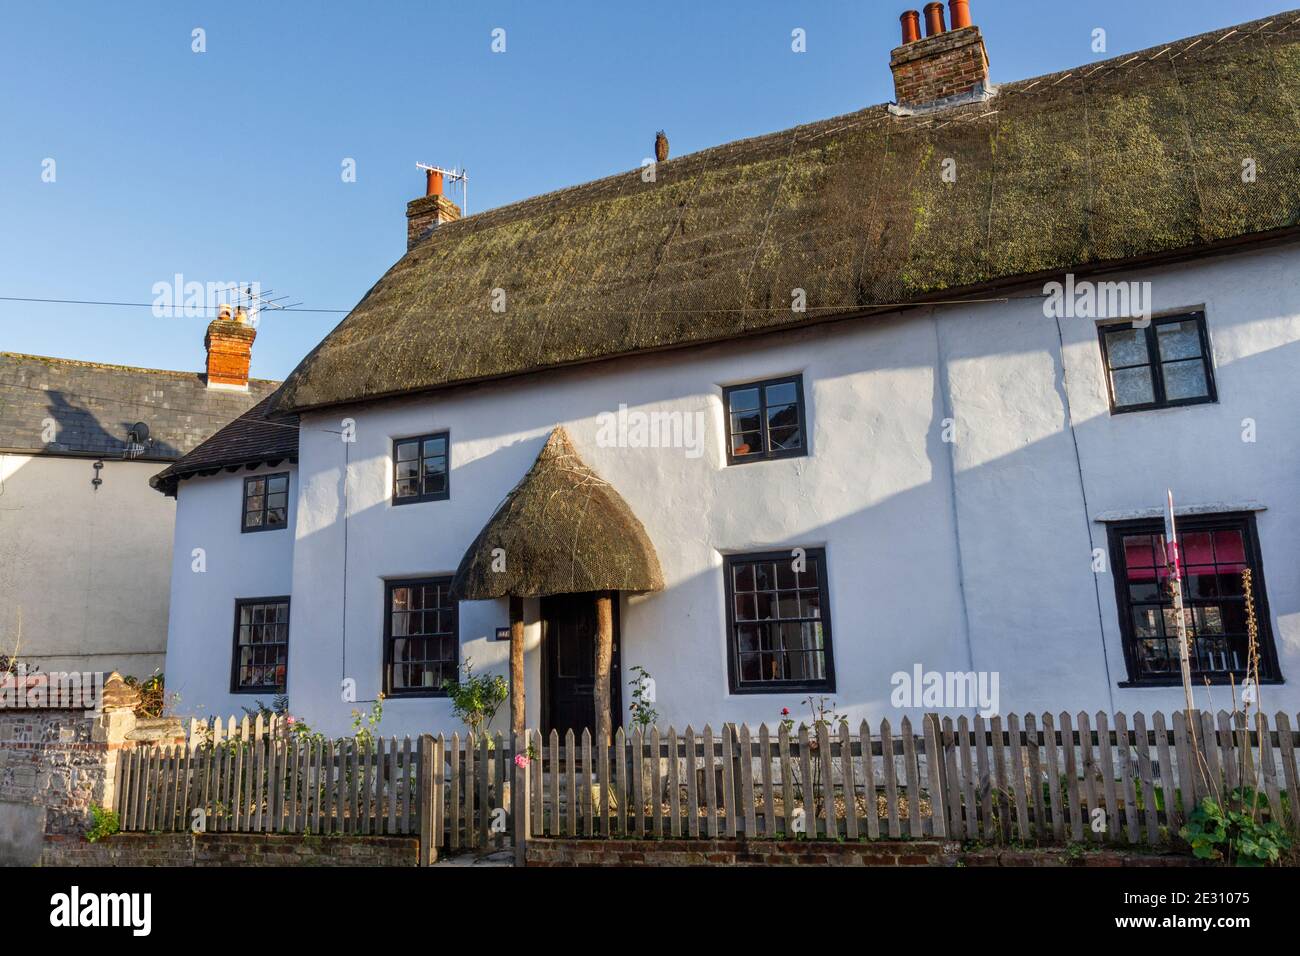 Magnifique cottage traditionnel au toit de chaume à Salisbury, Wiltshire, Royaume-Uni. Banque D'Images